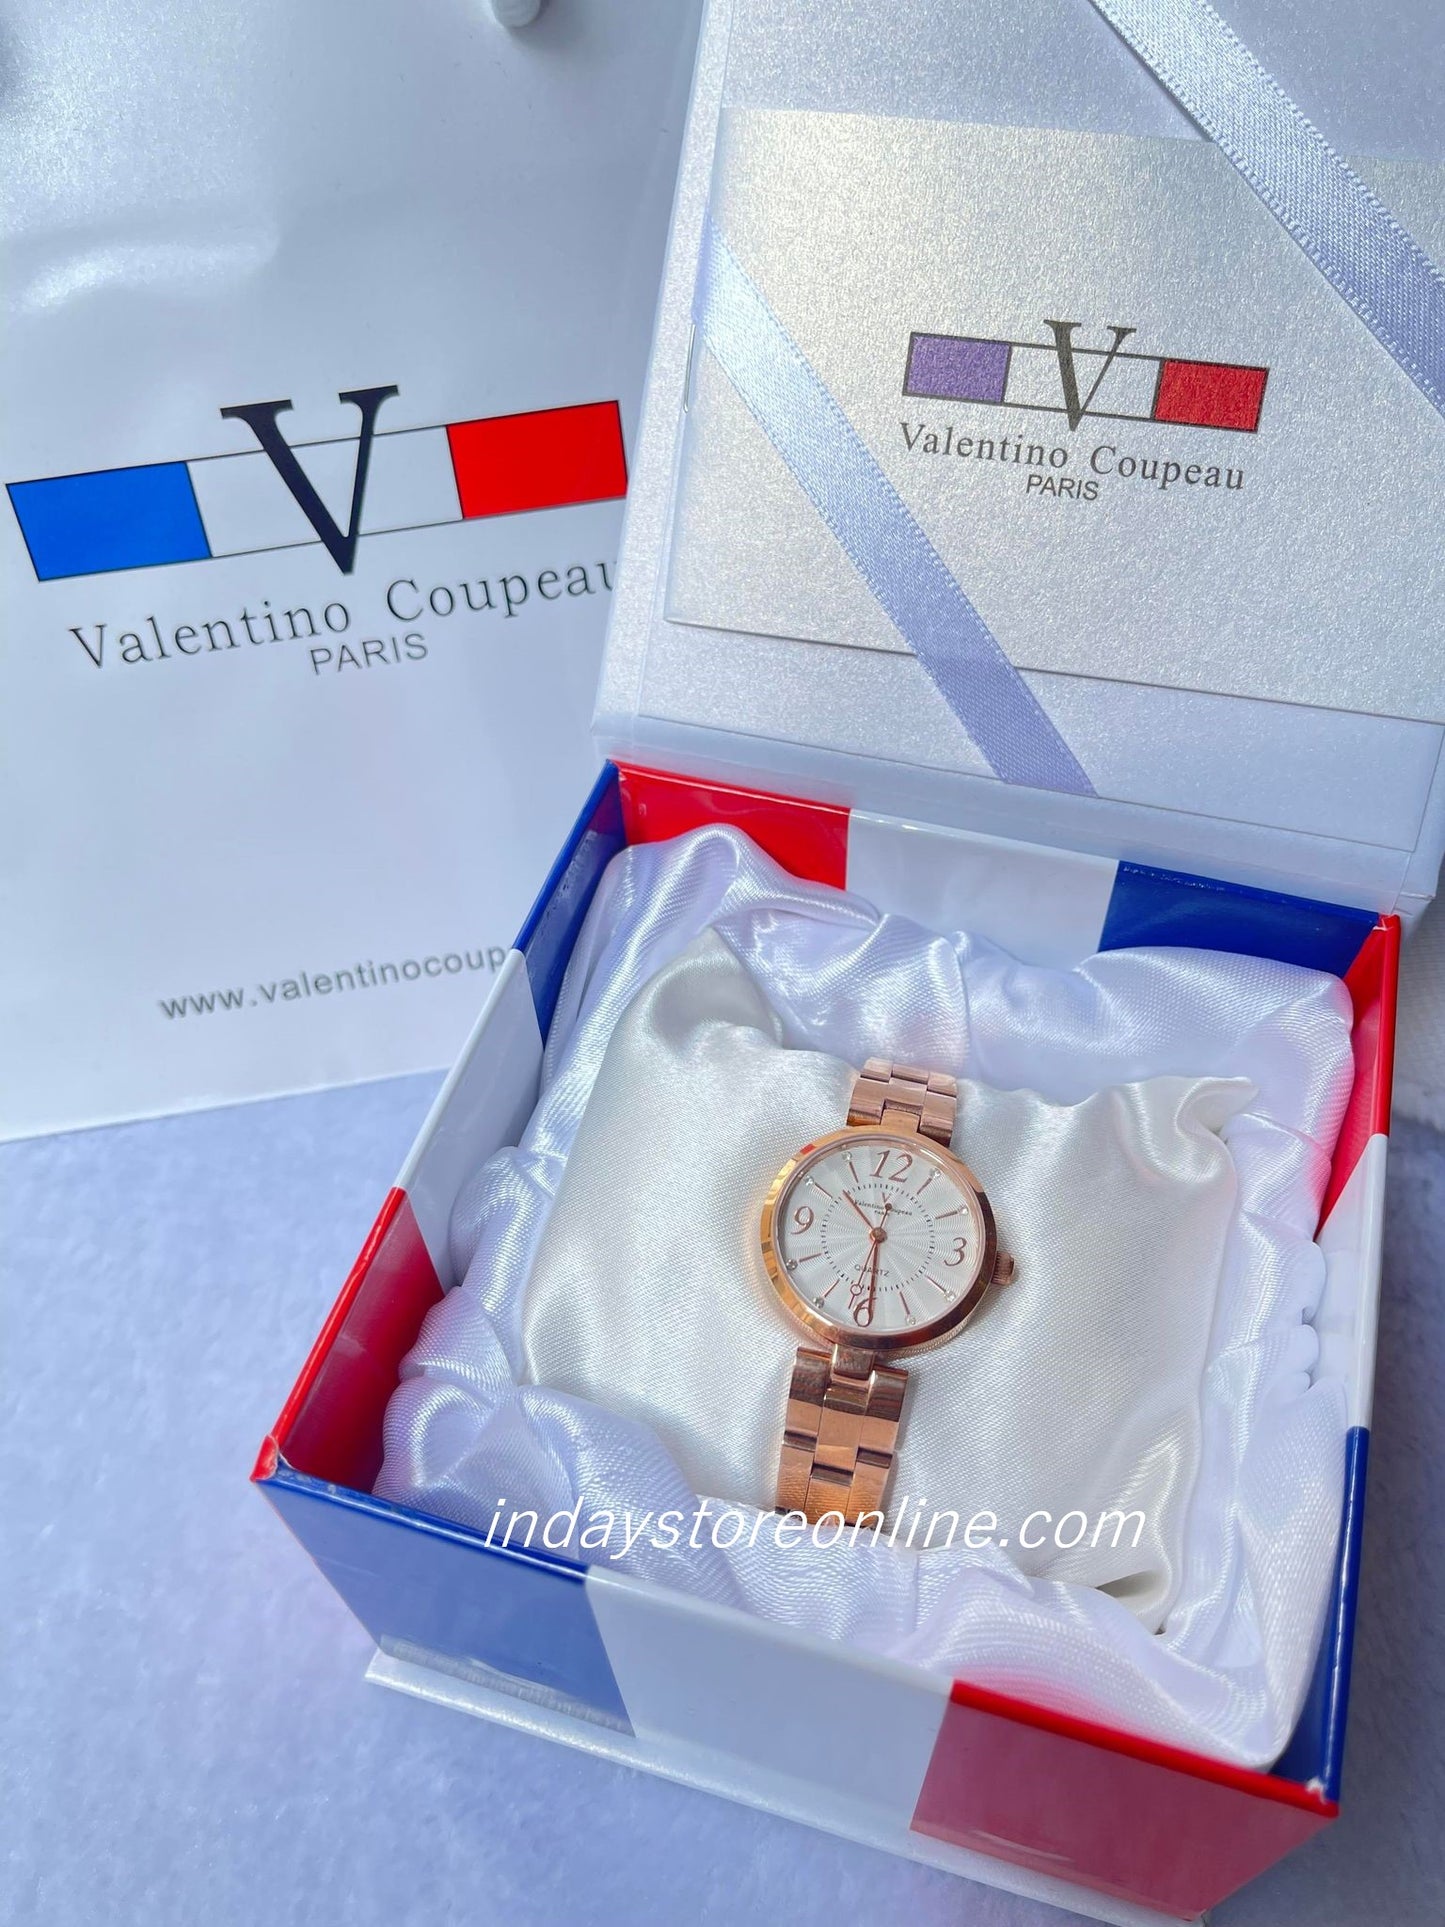 范倫鐵諾 古柏 Valentino Coupeau Women's Watch 61602-R1